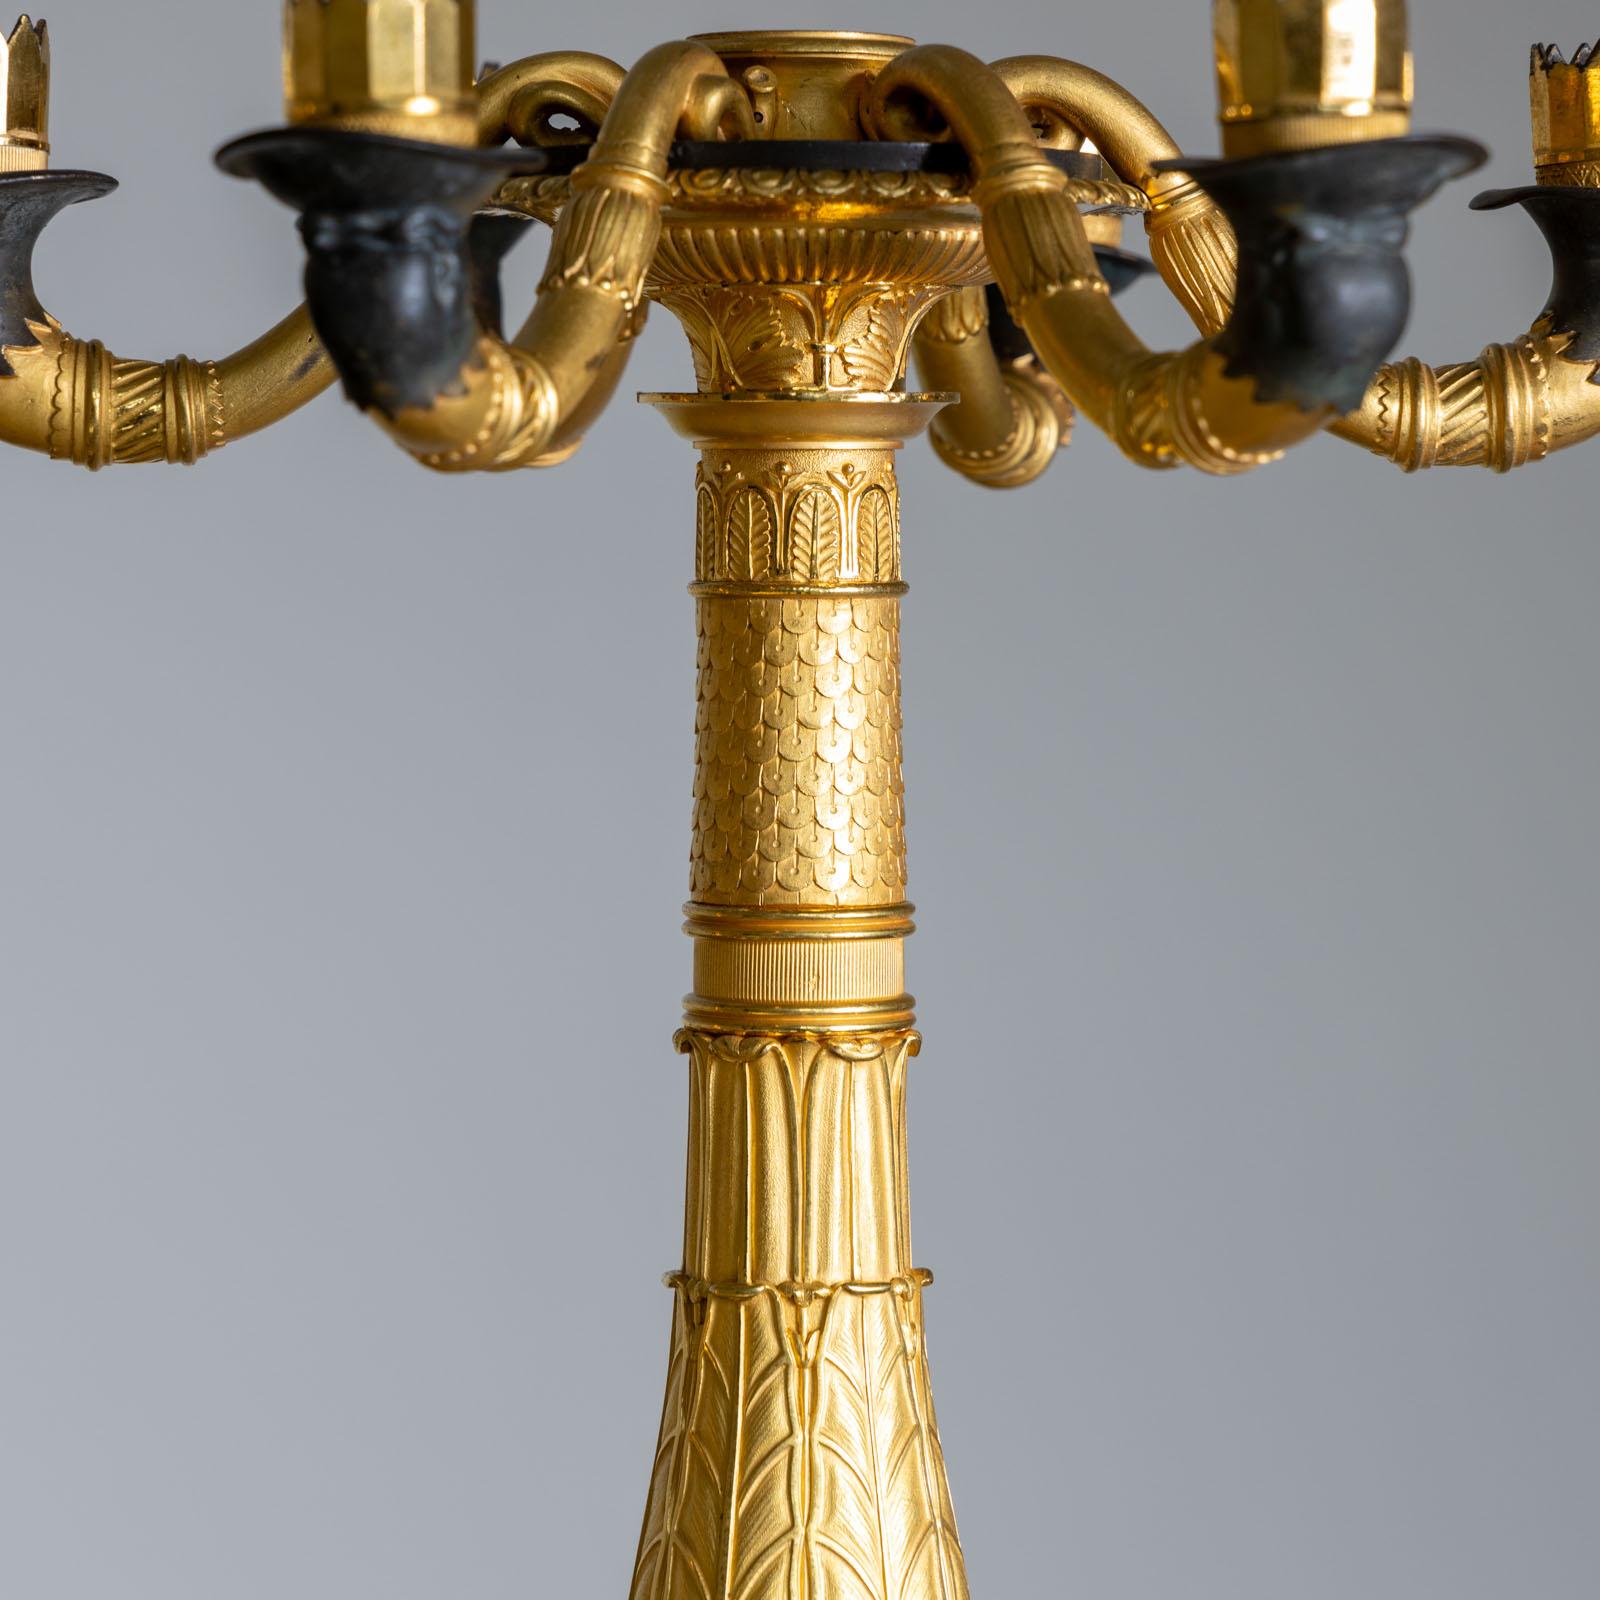 Paire de chandeliers Charles X à six bras sur piédestaux en marbre. Les chandeliers sont en partie en bronze doré et décorés, entre autres, de nymphes, de pattes de lion et de masques de lion. Le couronnement final est manquant, mais avec une